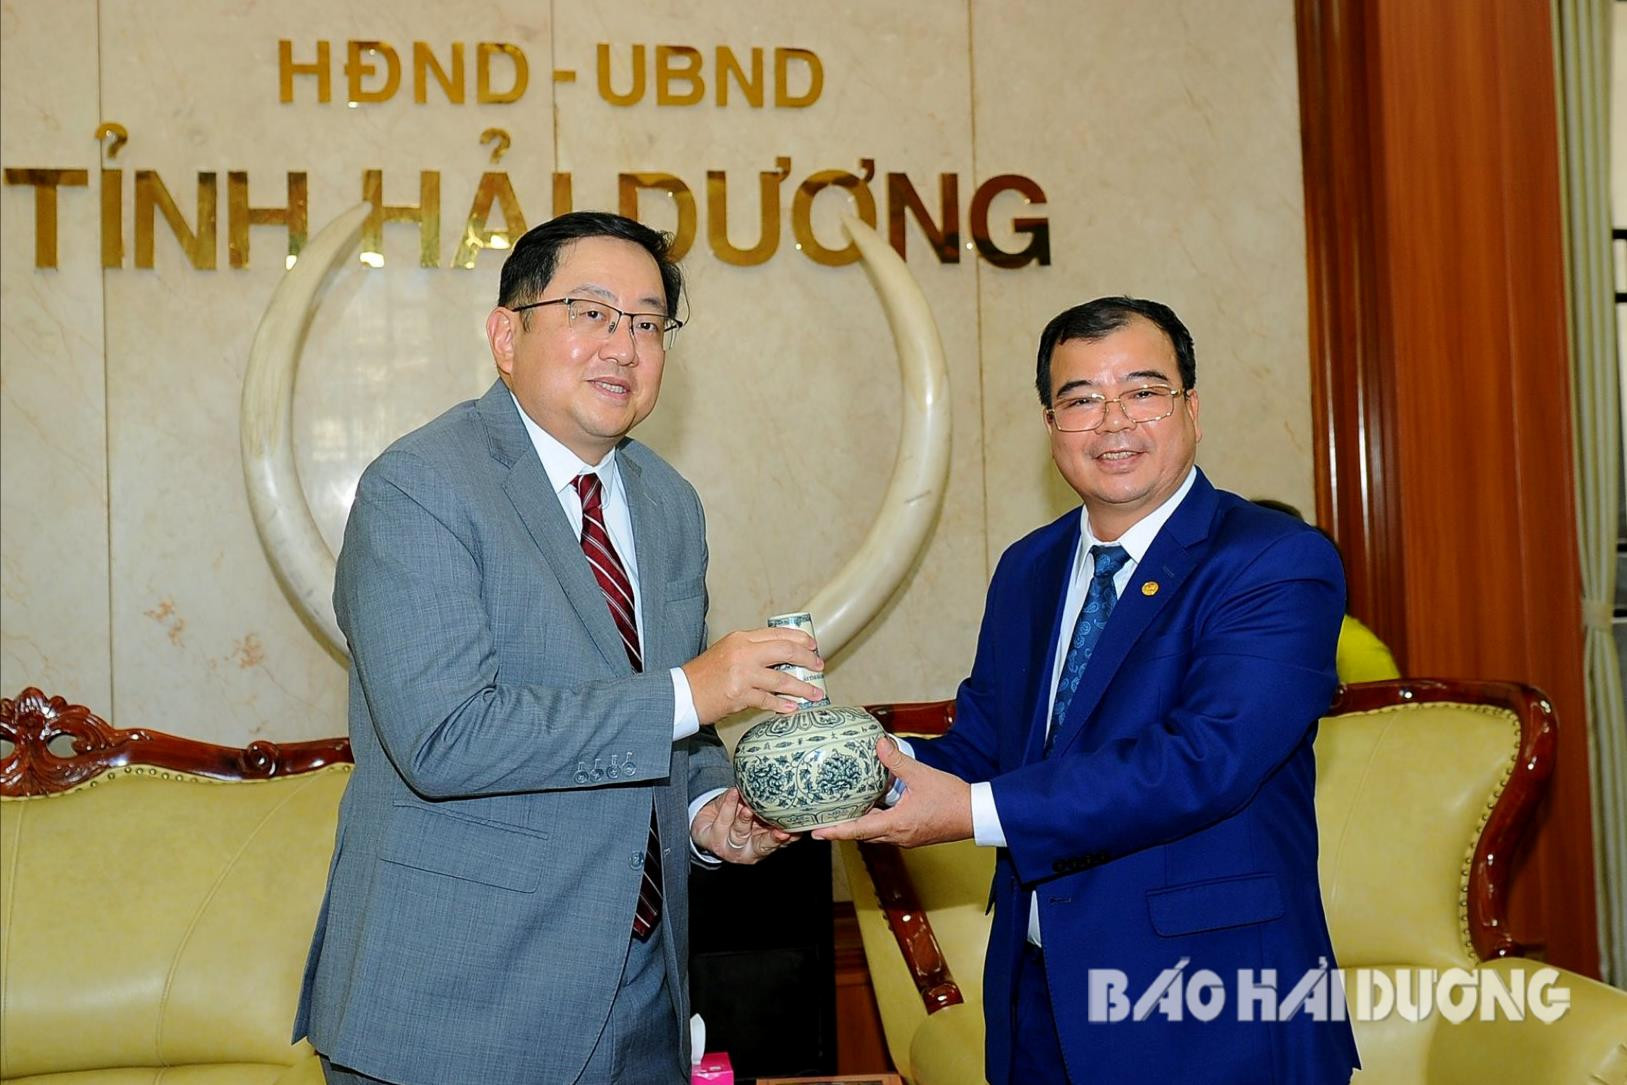 Đồng chí Phó Chủ tịch UBND tỉnh Nguyễn Minh Hùng tặng quà lưu niệm cho ngài Dato’ Tan Yang Thai, Đại sứ Đặc mệnh toàn quyền Malaysia tại Việt Nam